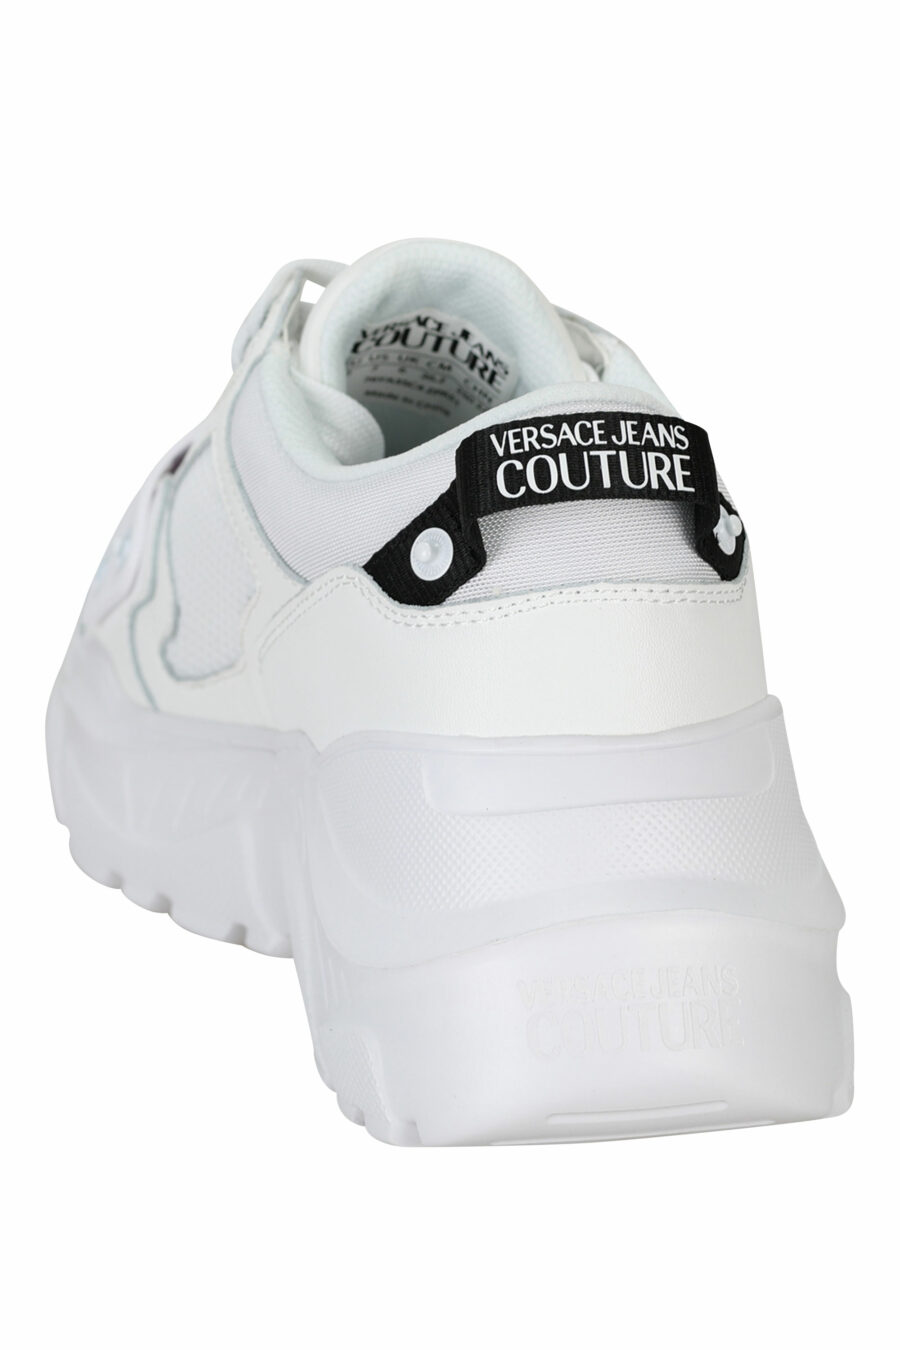 Zapatillas blancas "speedtrack" con minilogo frontal negro en goma - 8052019604337 3